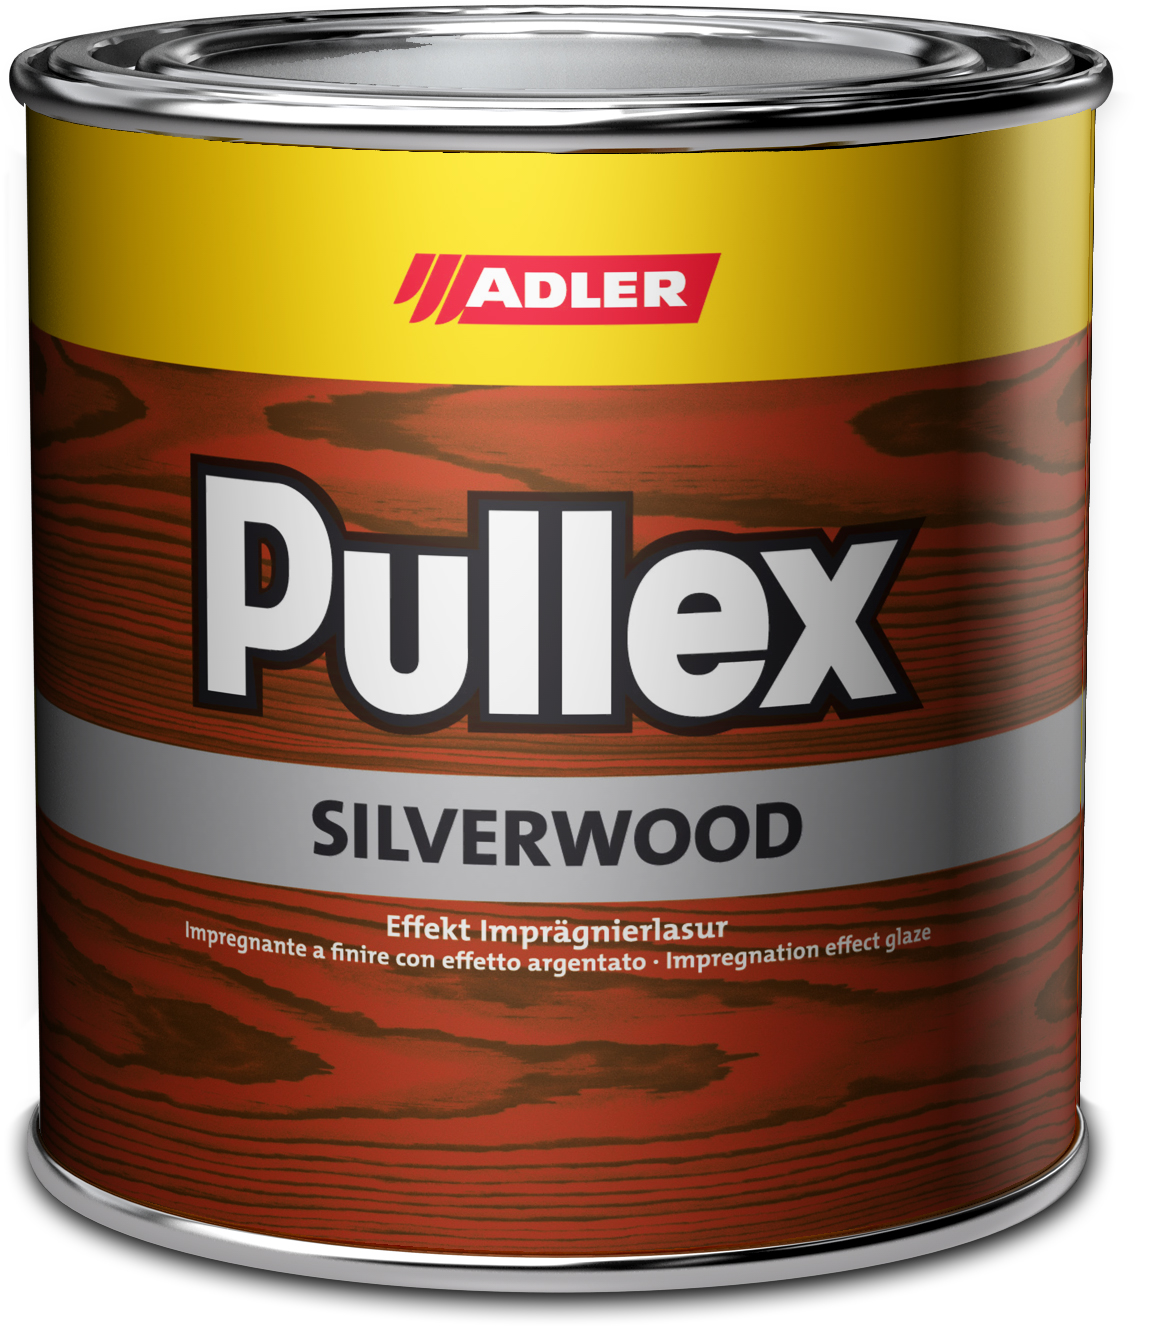 Adler Pullex Silverwood - efektná lazúra do exteriéru vytvárajúca vzhľad starého dreva 5 l altgrau - starošedá